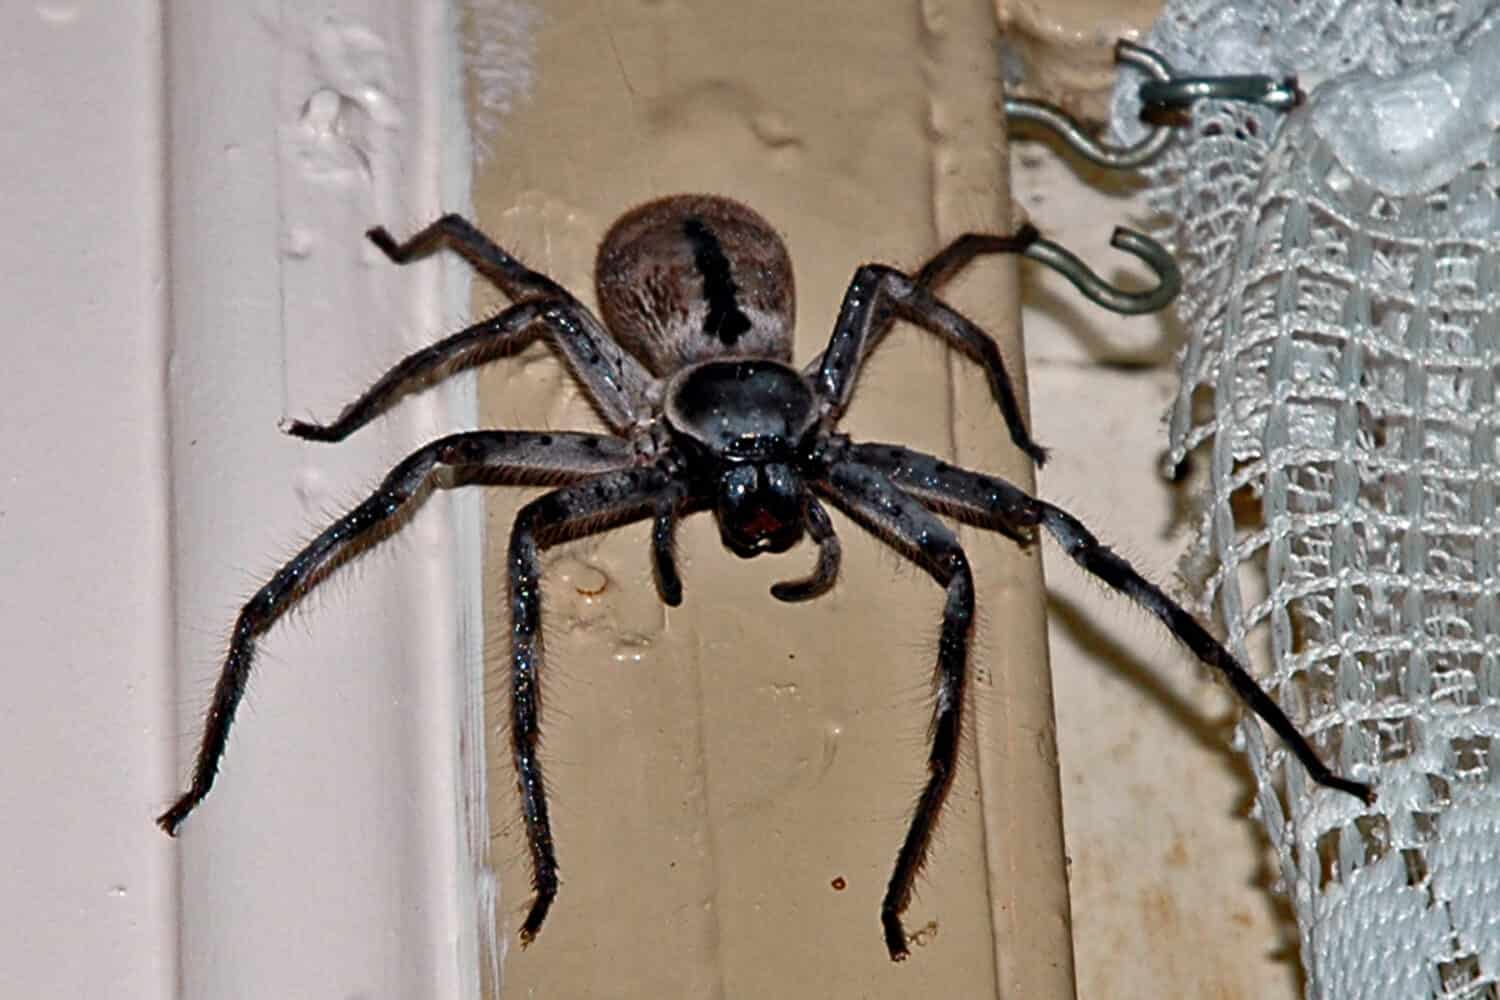 Huge huntsman / mouse spider in our kitchen